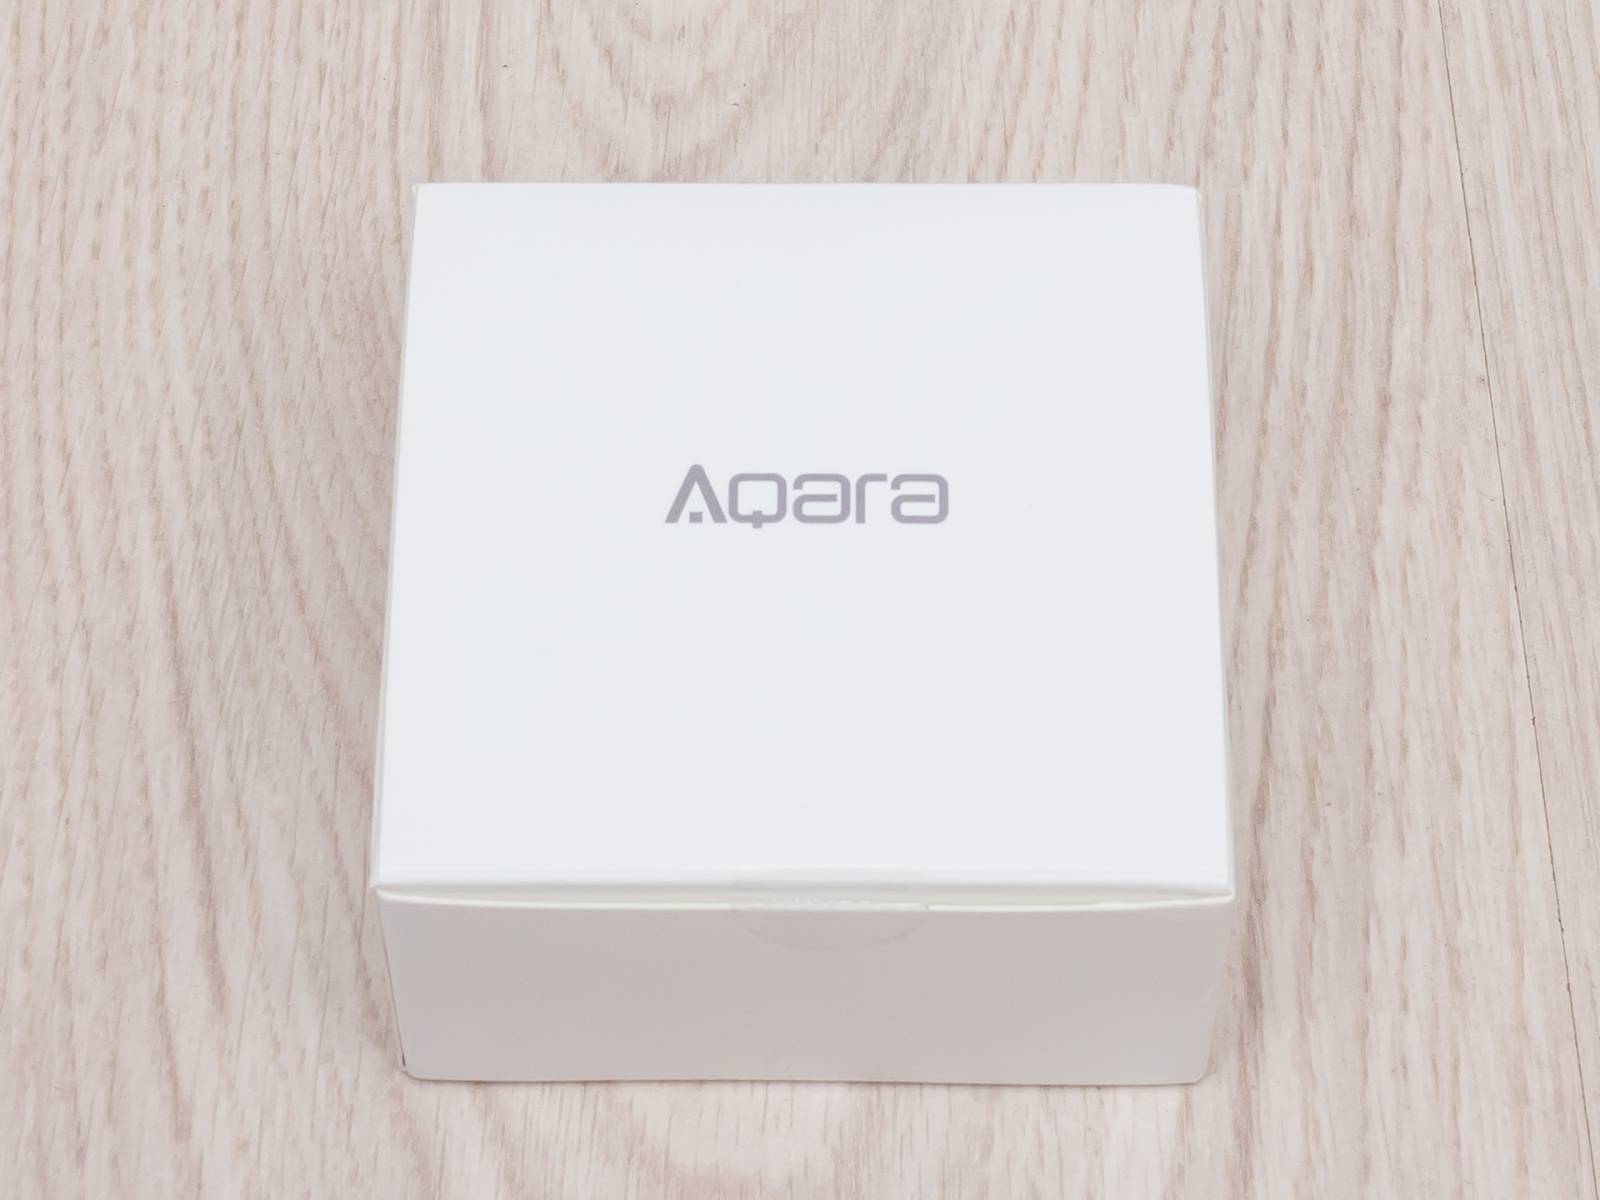 Aqara cube